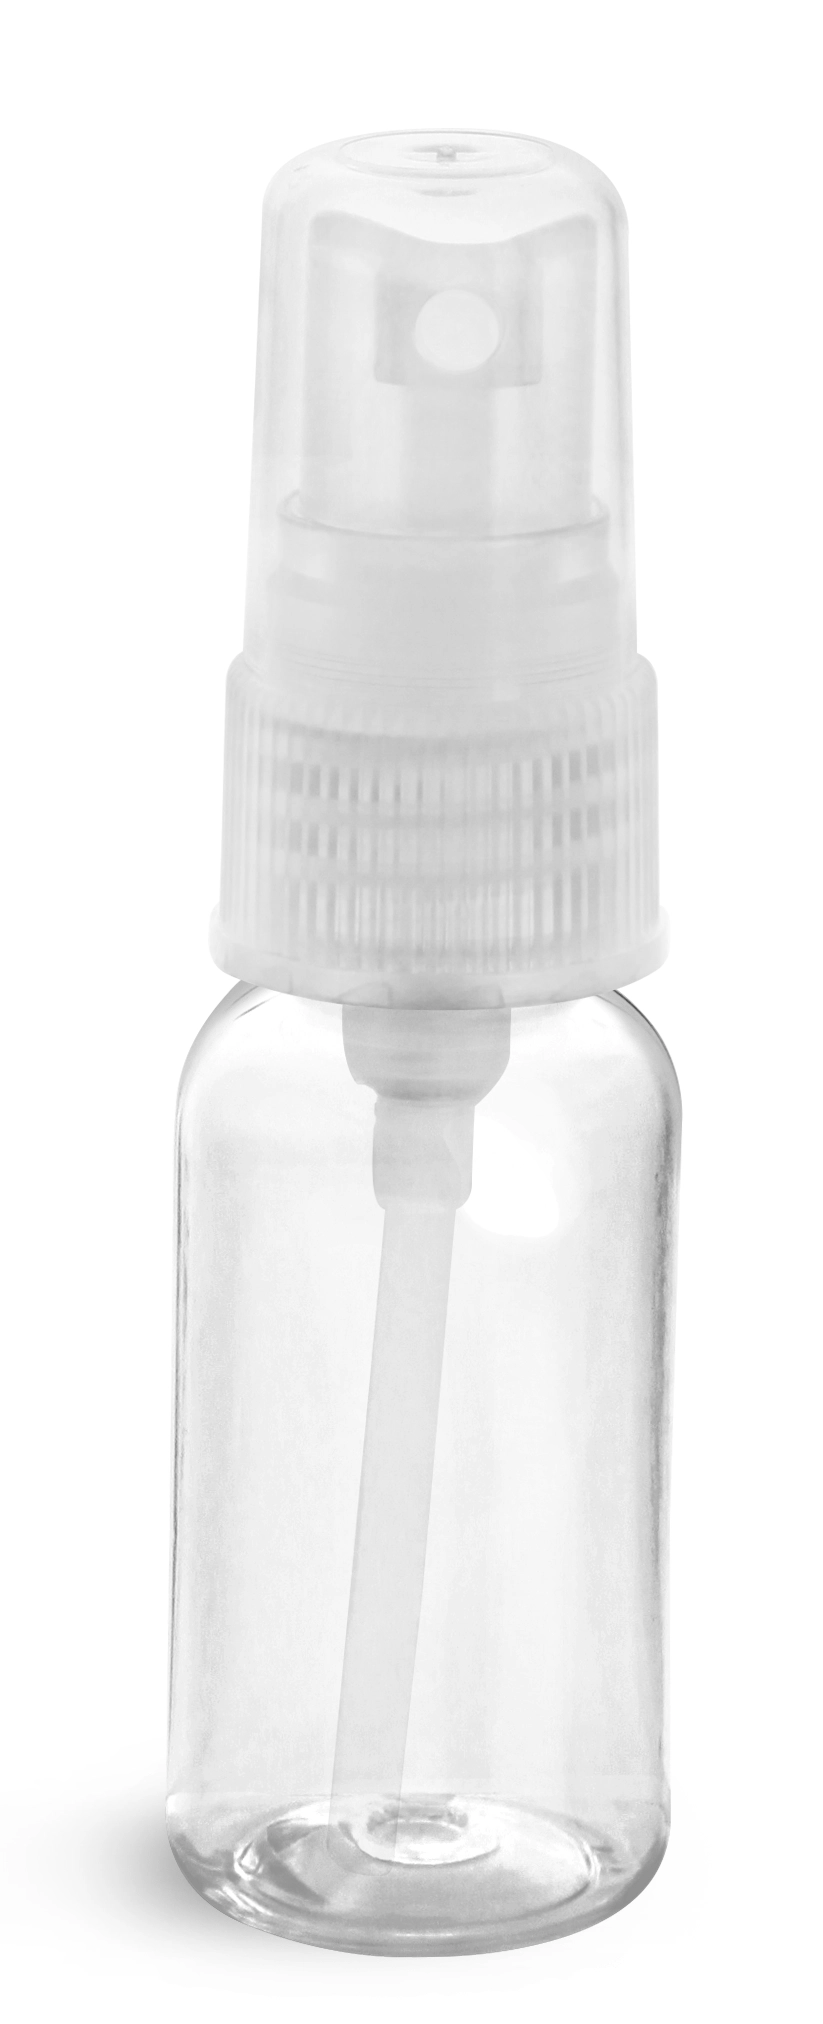 1 oz Clear PET Boston Round Bottles w/ Natural Fine Mist Sprayers